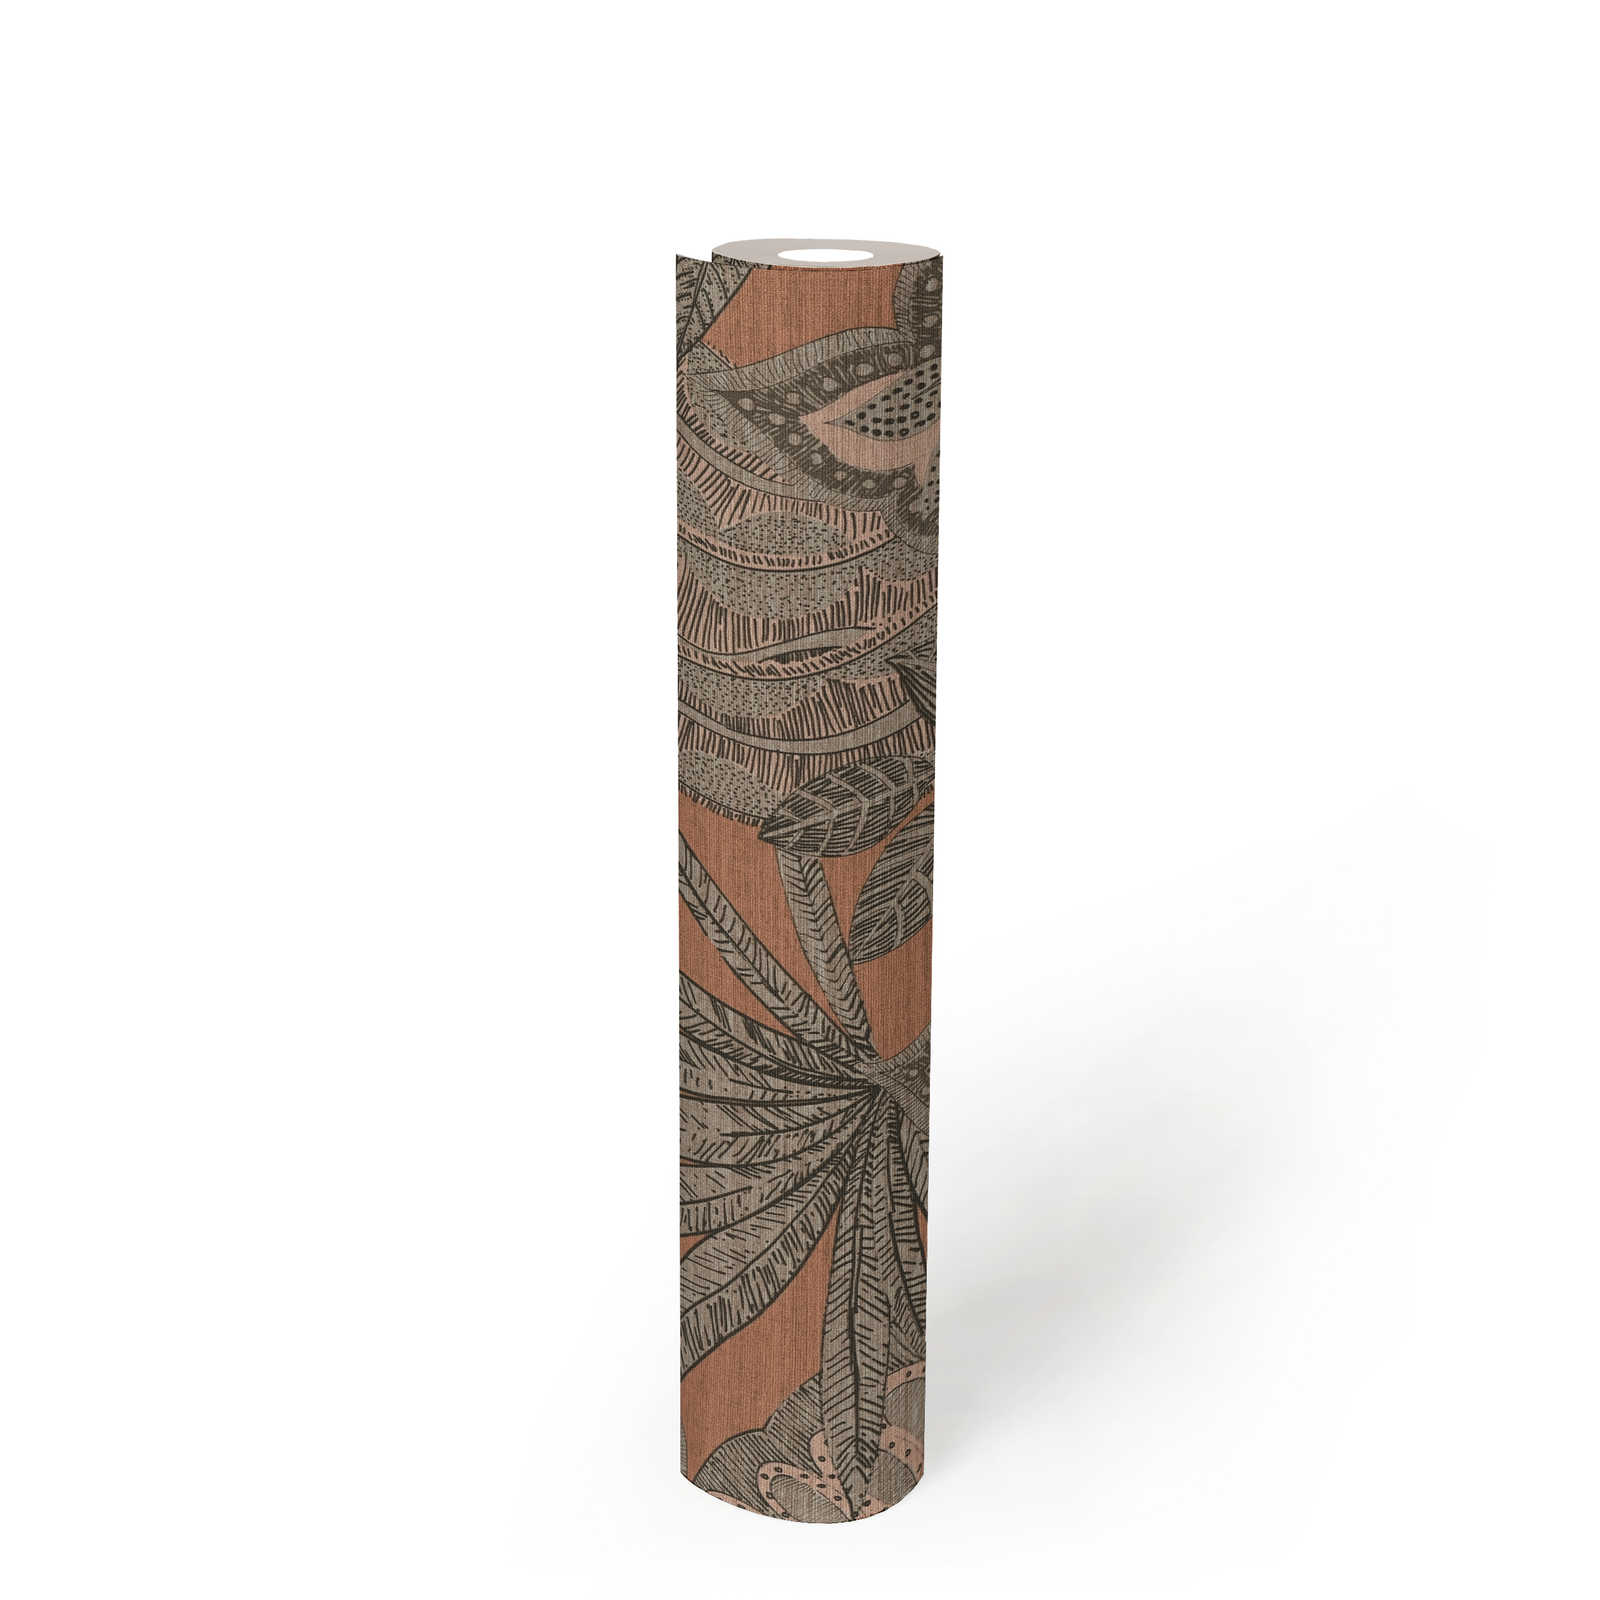             Vliestapete floral im grafischen Design mit leichter Struktur, matt – Rosa, Grau, Taupe
        